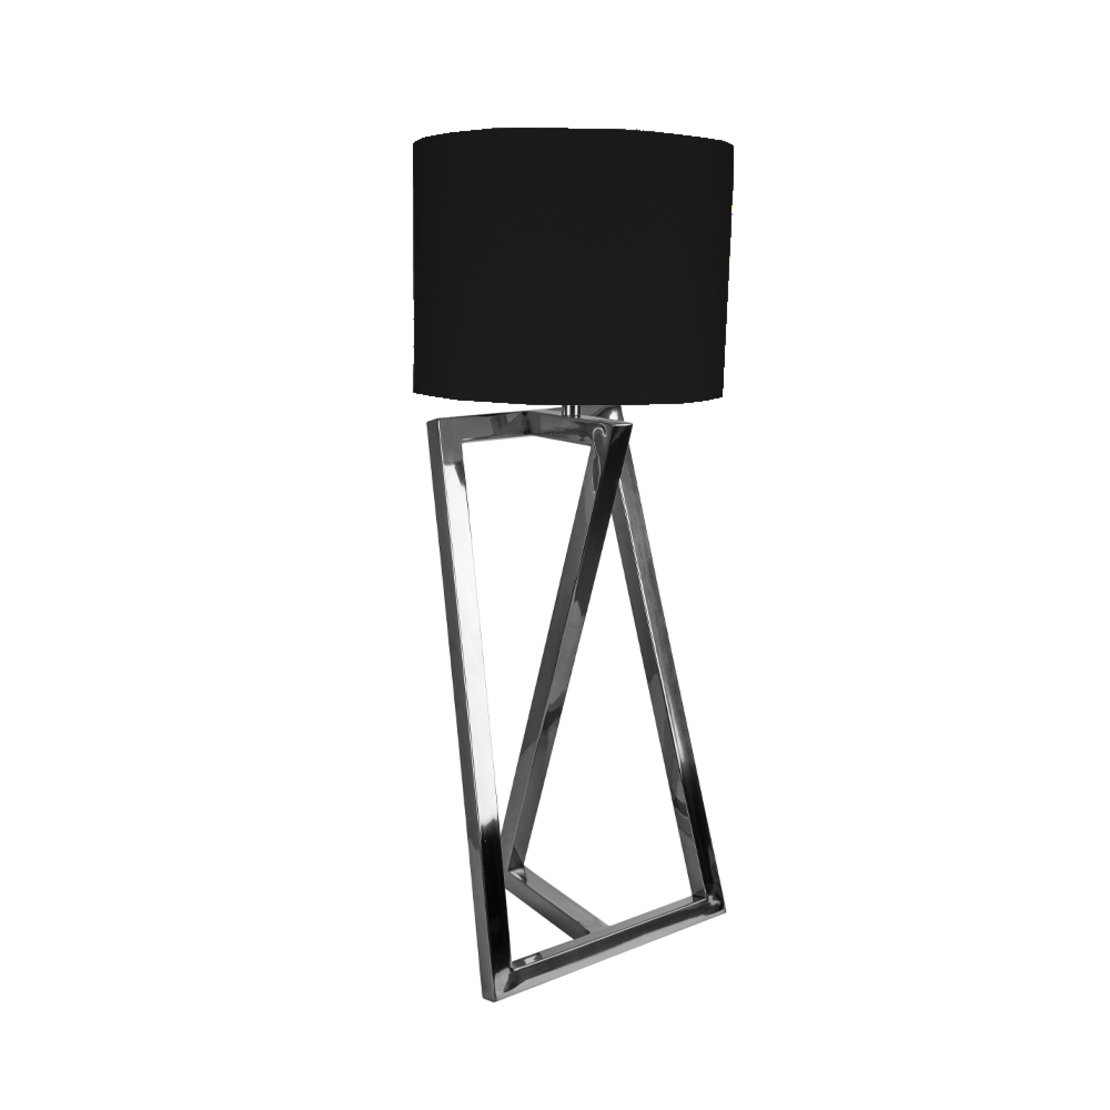 ΟΤΤΟ LAMP TABLE STEEL FABRIC NICKEL BLACK D30xH73c